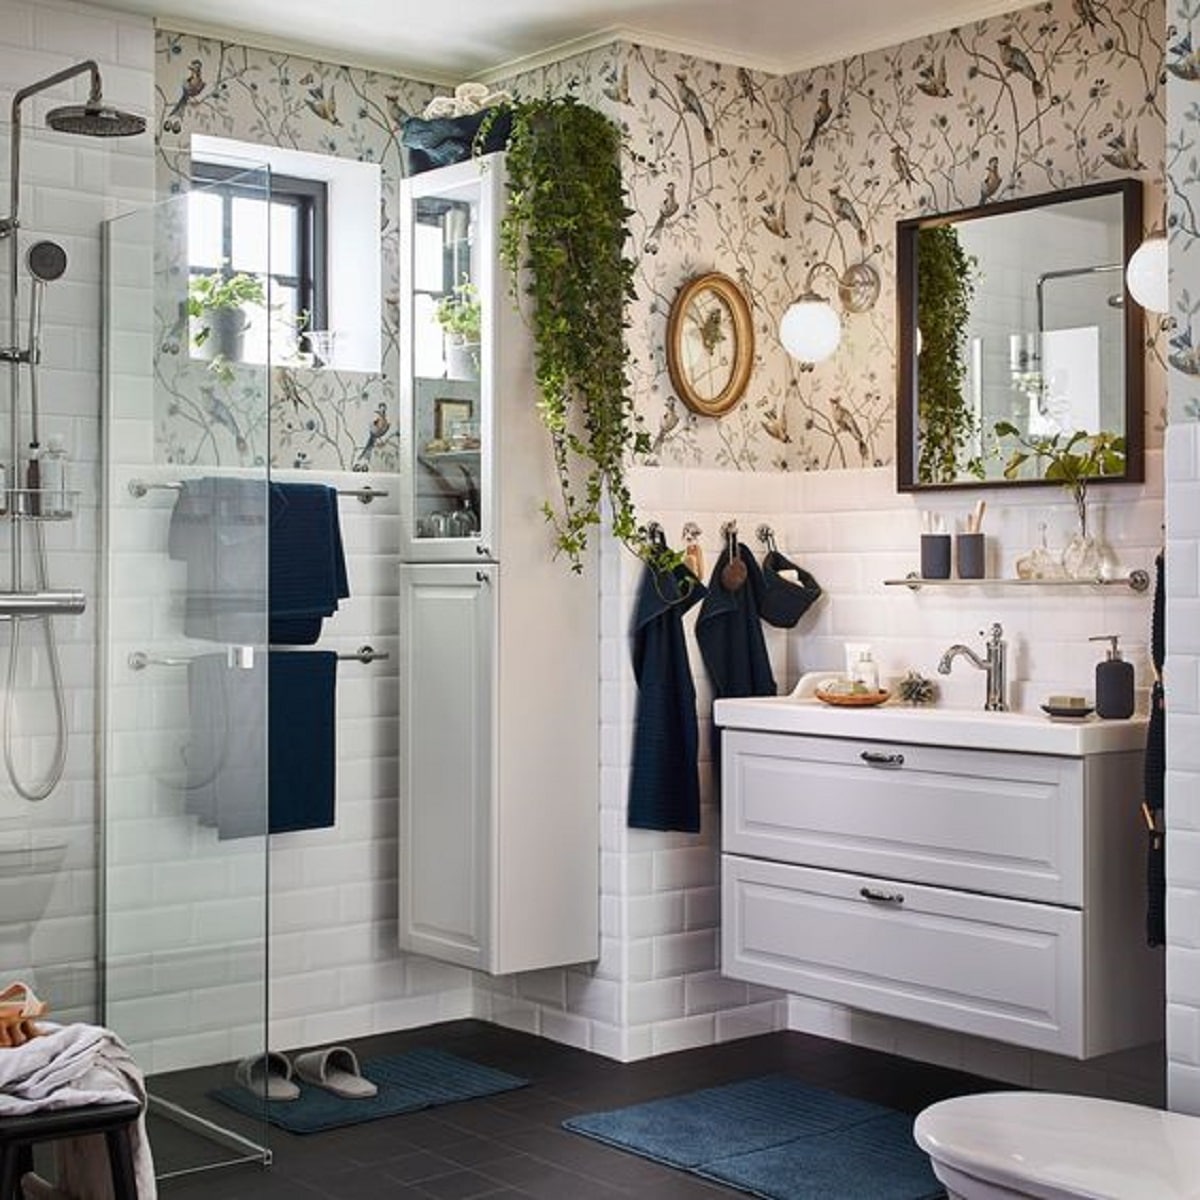 Comment décorer une salle de bain de style romantique ?